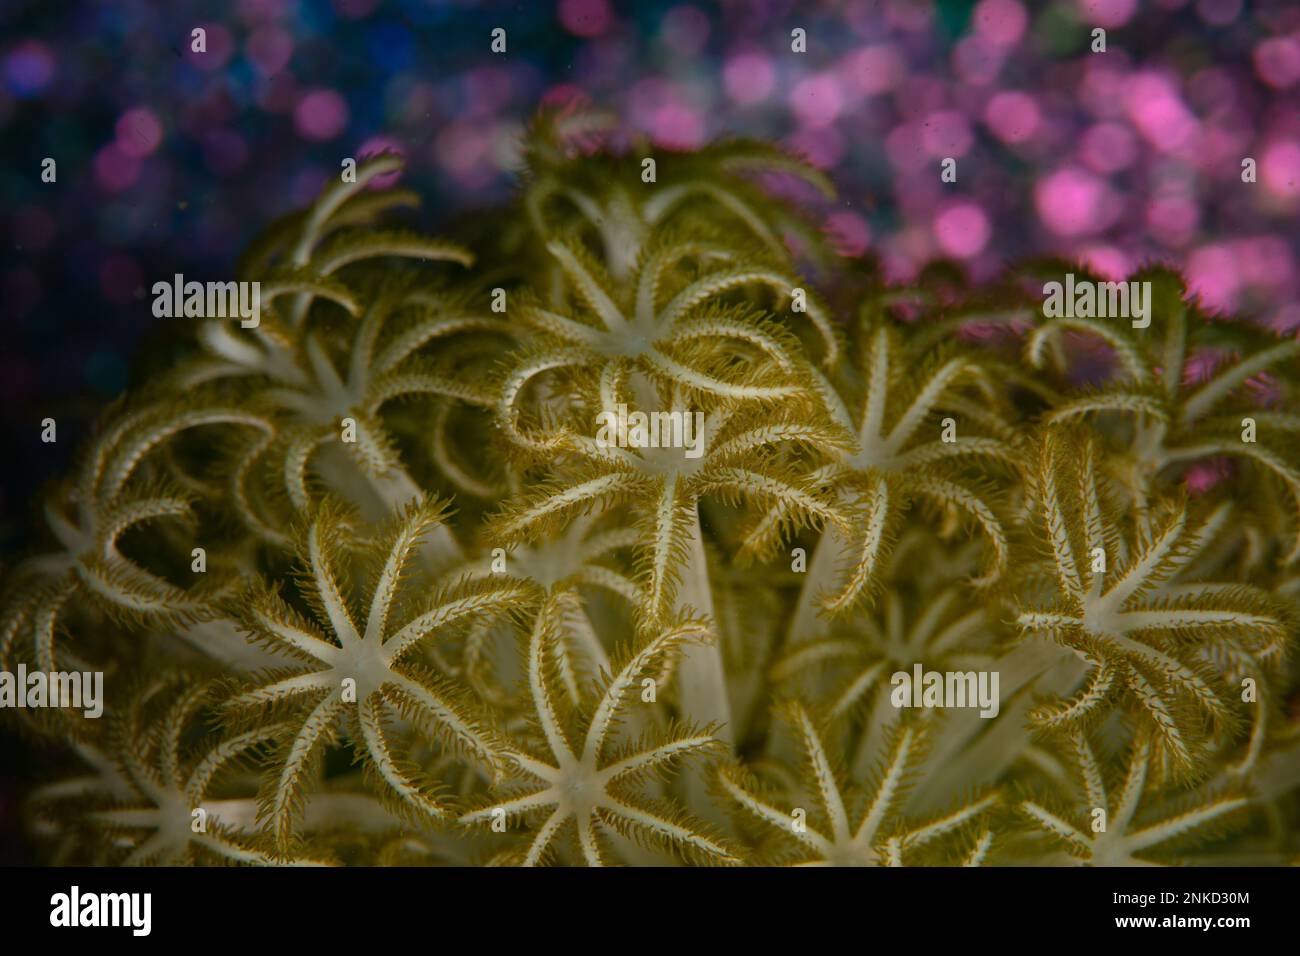 Große weiche Korallenpolypen warten darauf, dass Plankton in ihrem Griff auf einem Korallenriff in Indonesien schwimmt. Weiche Korallenpolypen haben normalerweise 8 Tentakel. Stockfoto